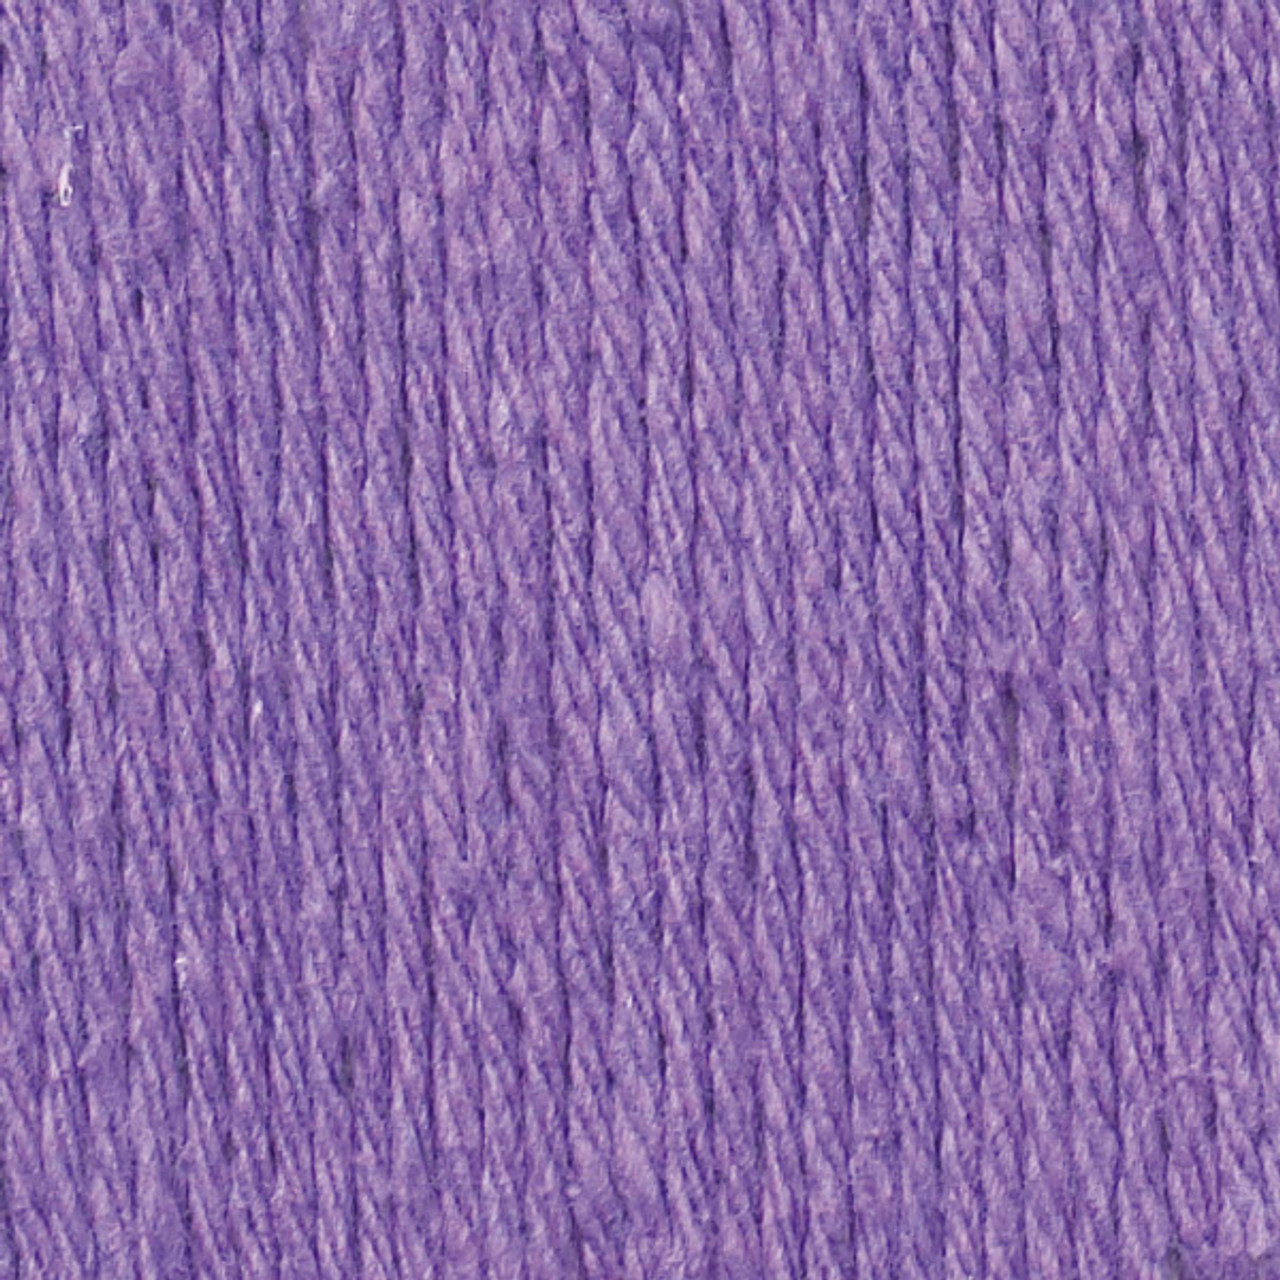 Lily Sugar'n Cream The Original Yarn, Hot Purple, 2.5oz(71g